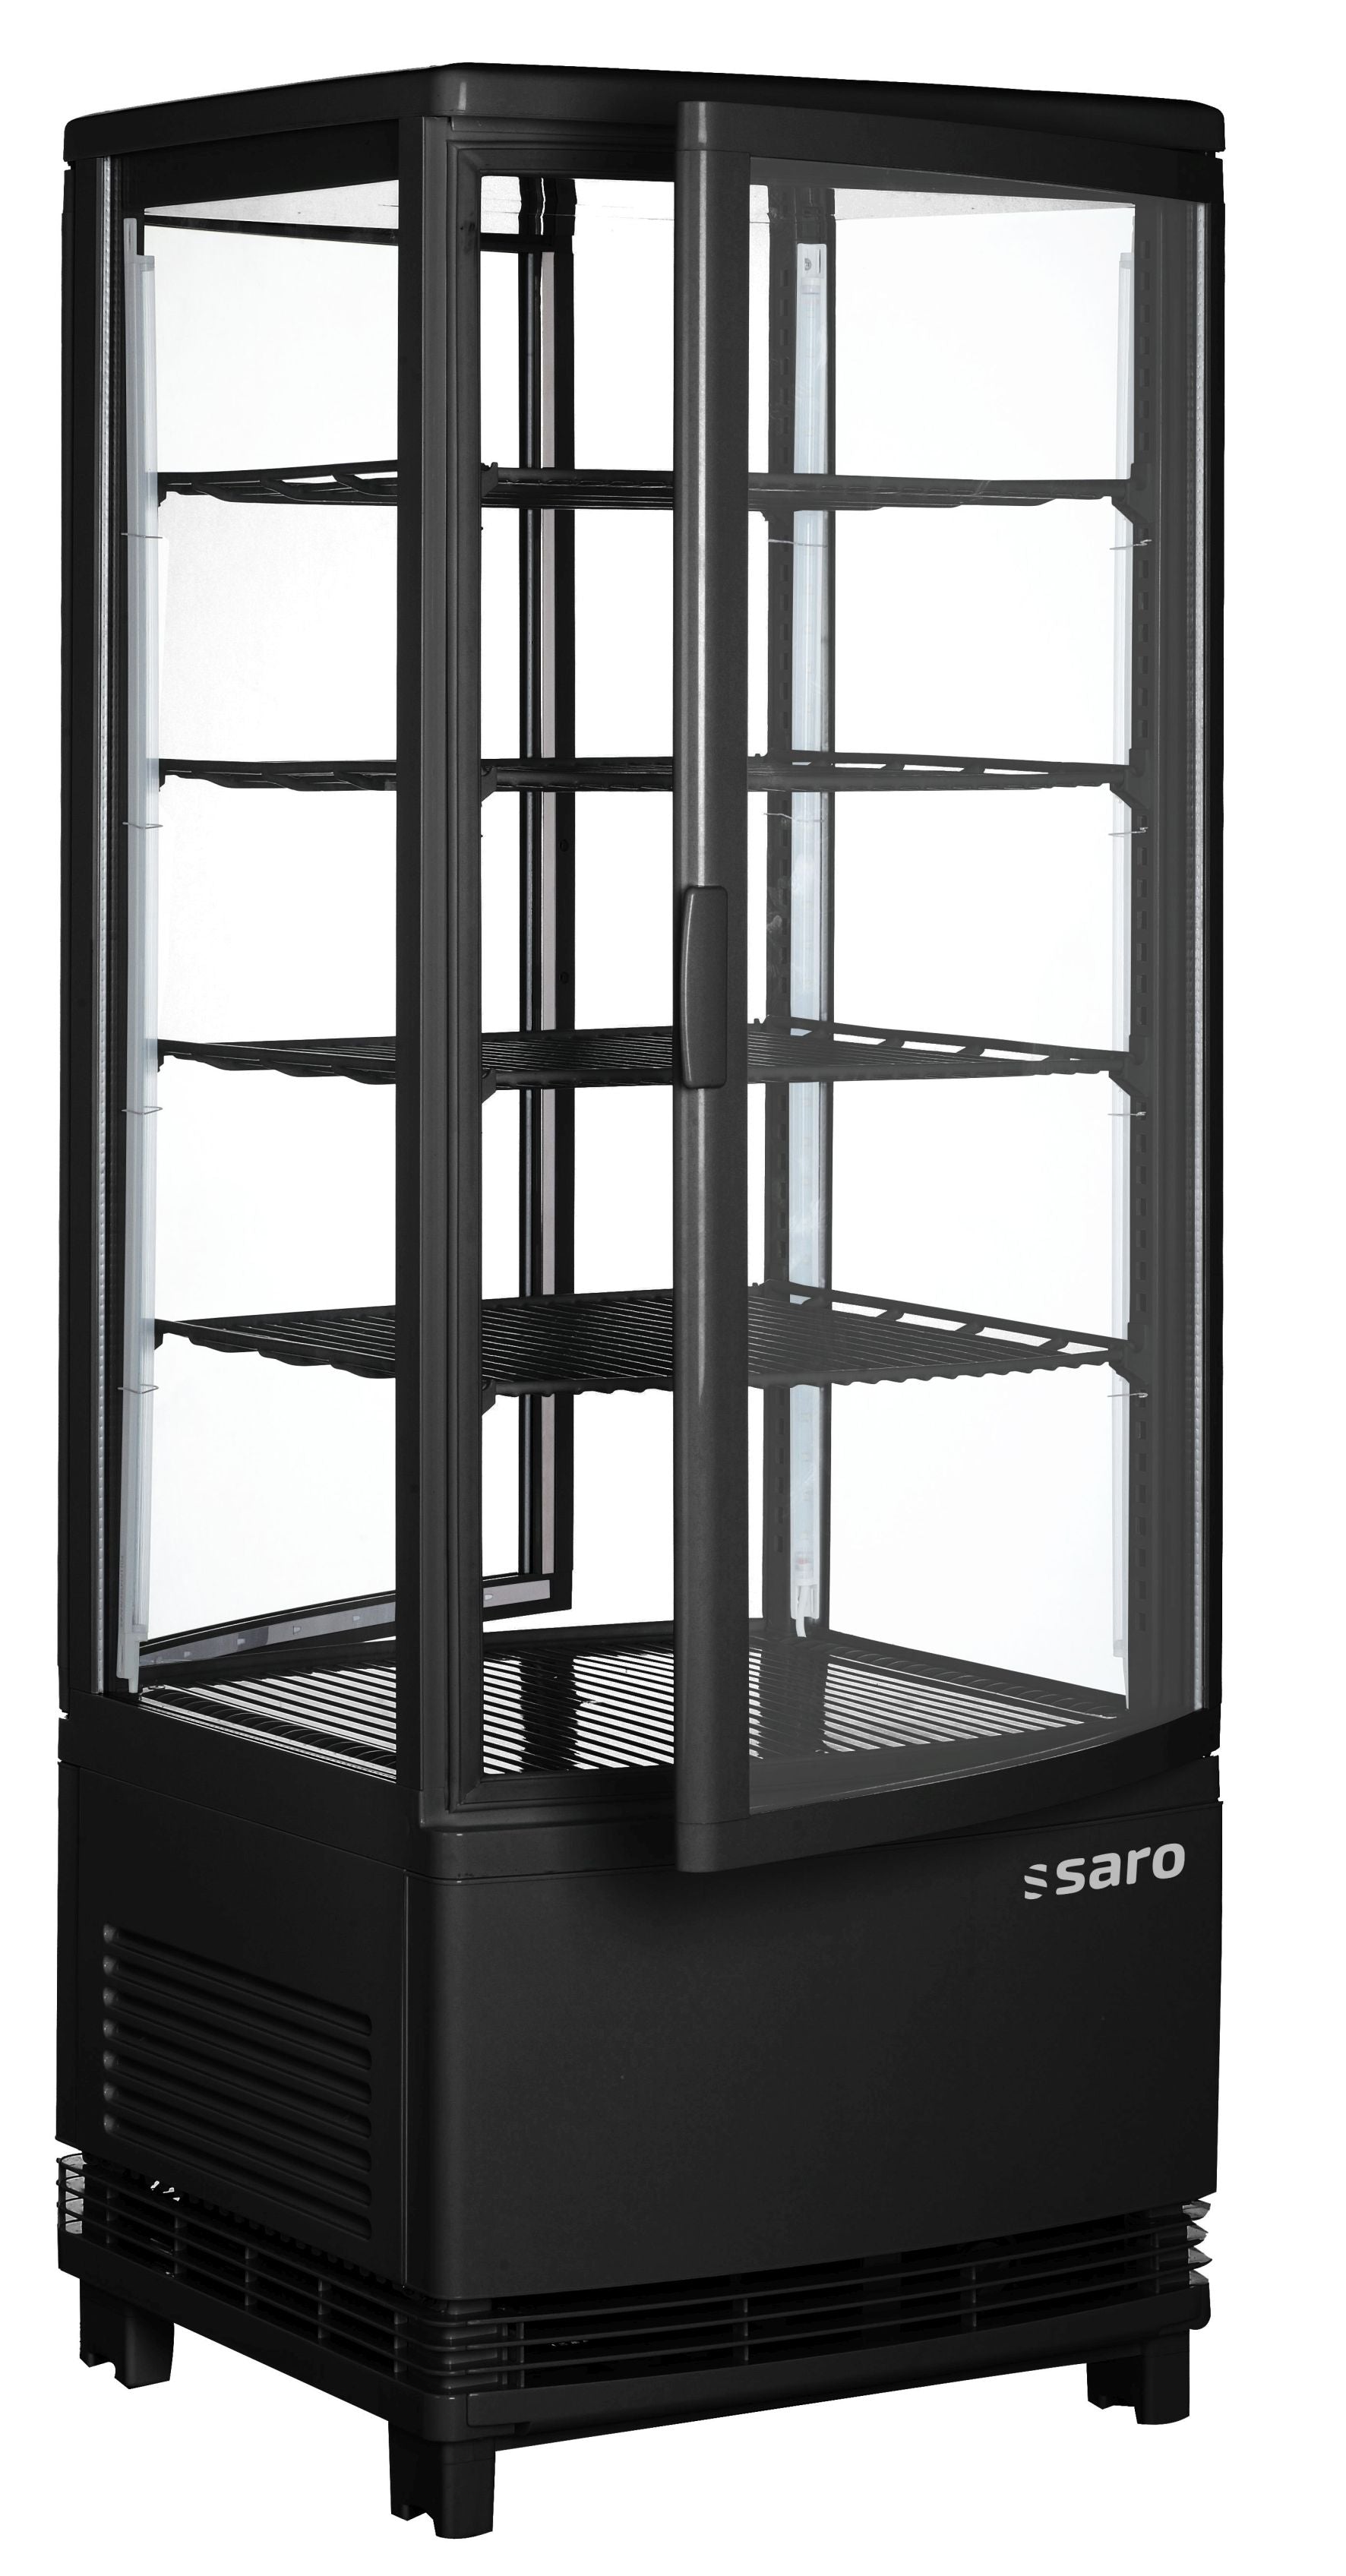 Se SARO Kølemontre med dobbeltdøre, model SC 100 DT sort hos Maxigastro.com